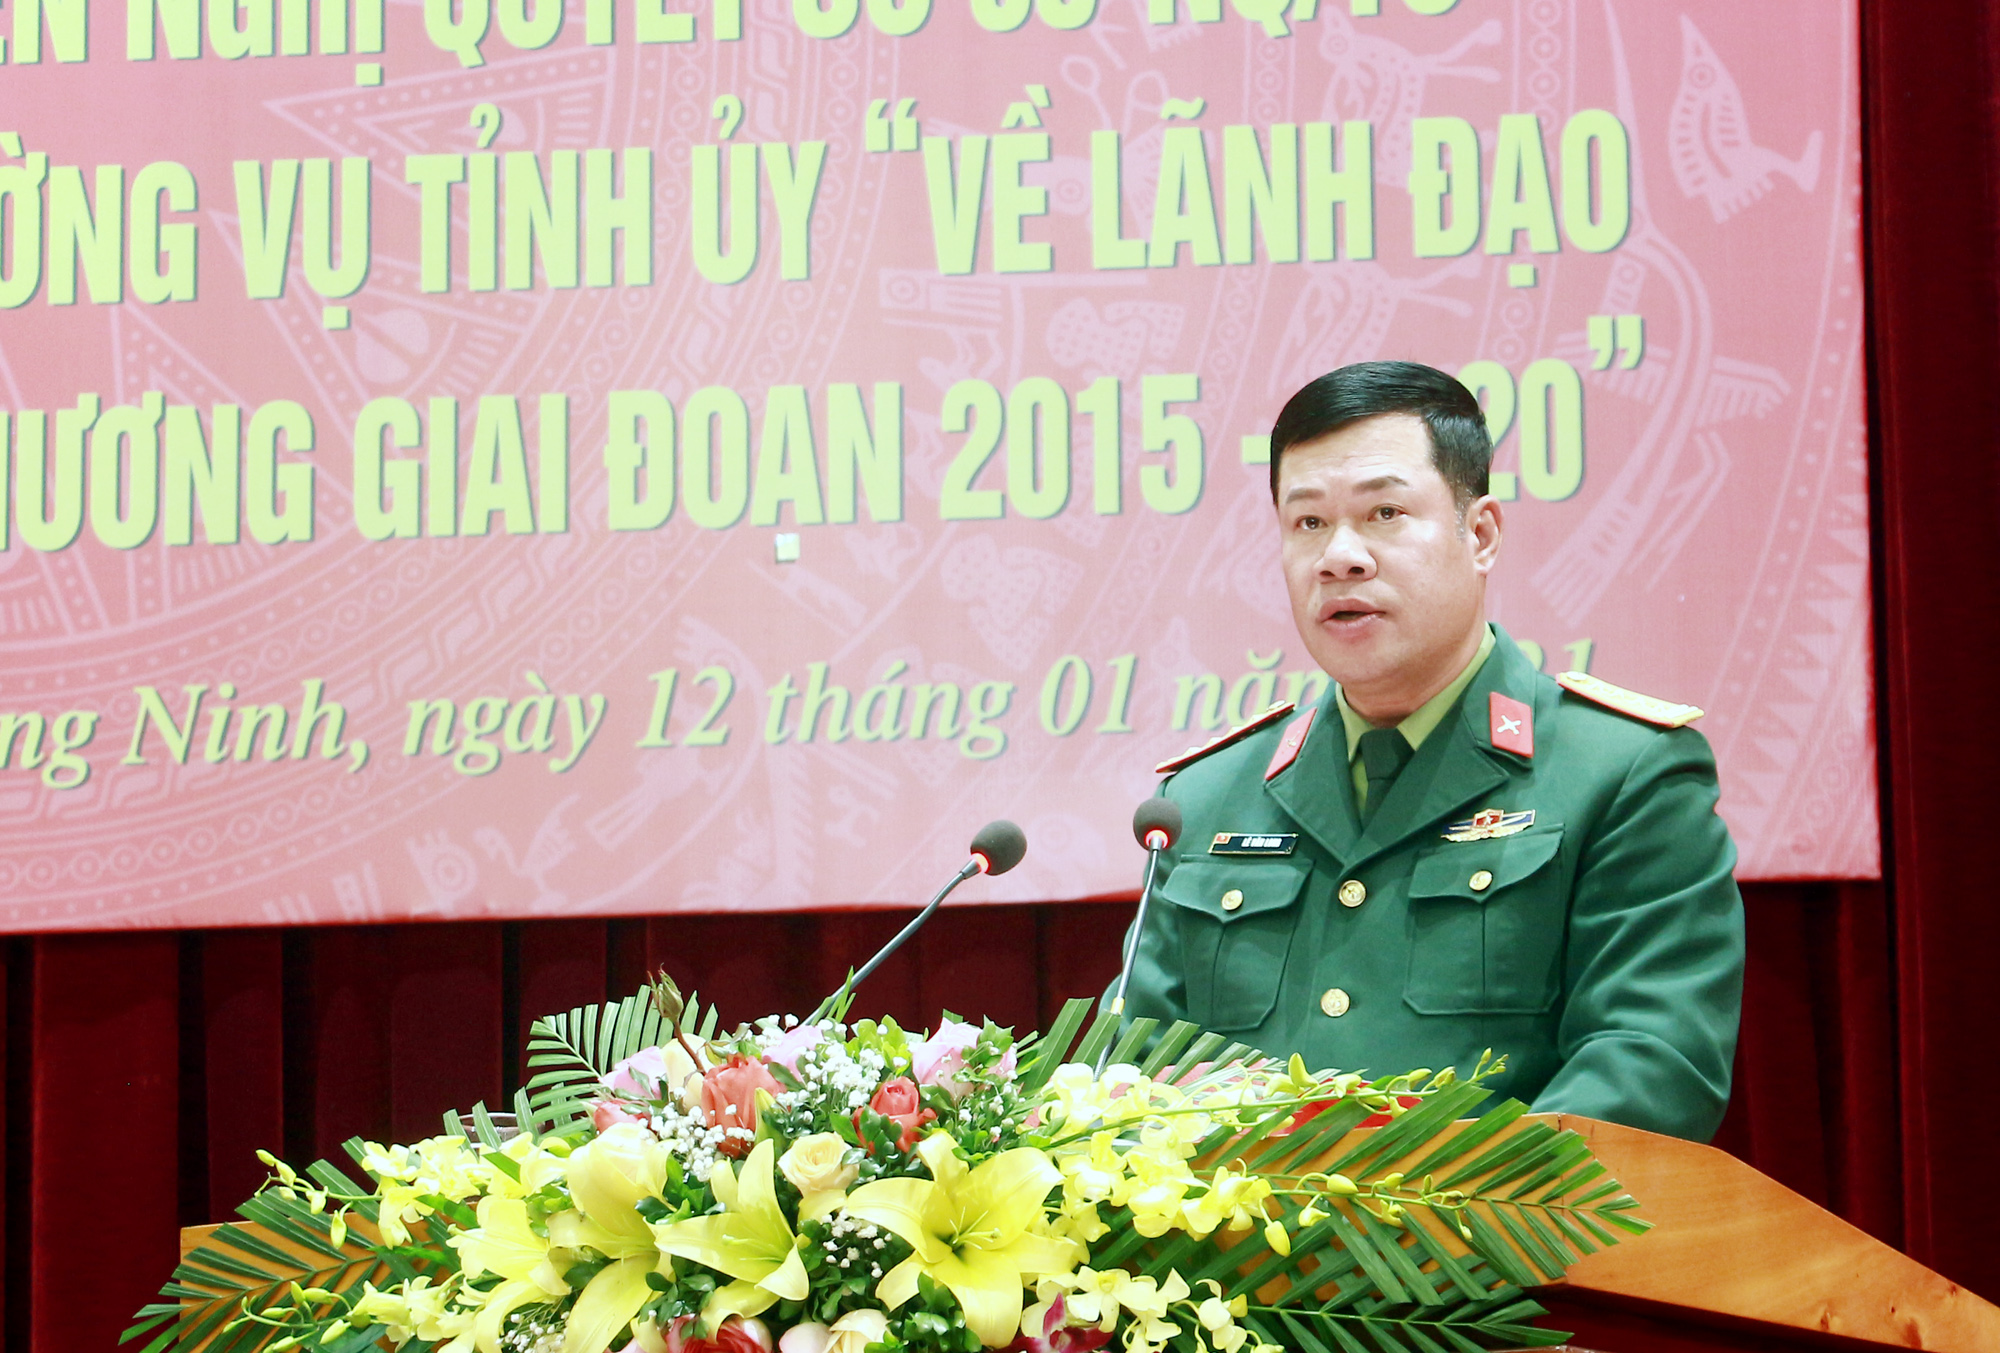 Đại tá Lê Văn Long, Chỉ huy trưởng Bộ CHQS tỉnh, trình bày báo cáo tại hội nghị.